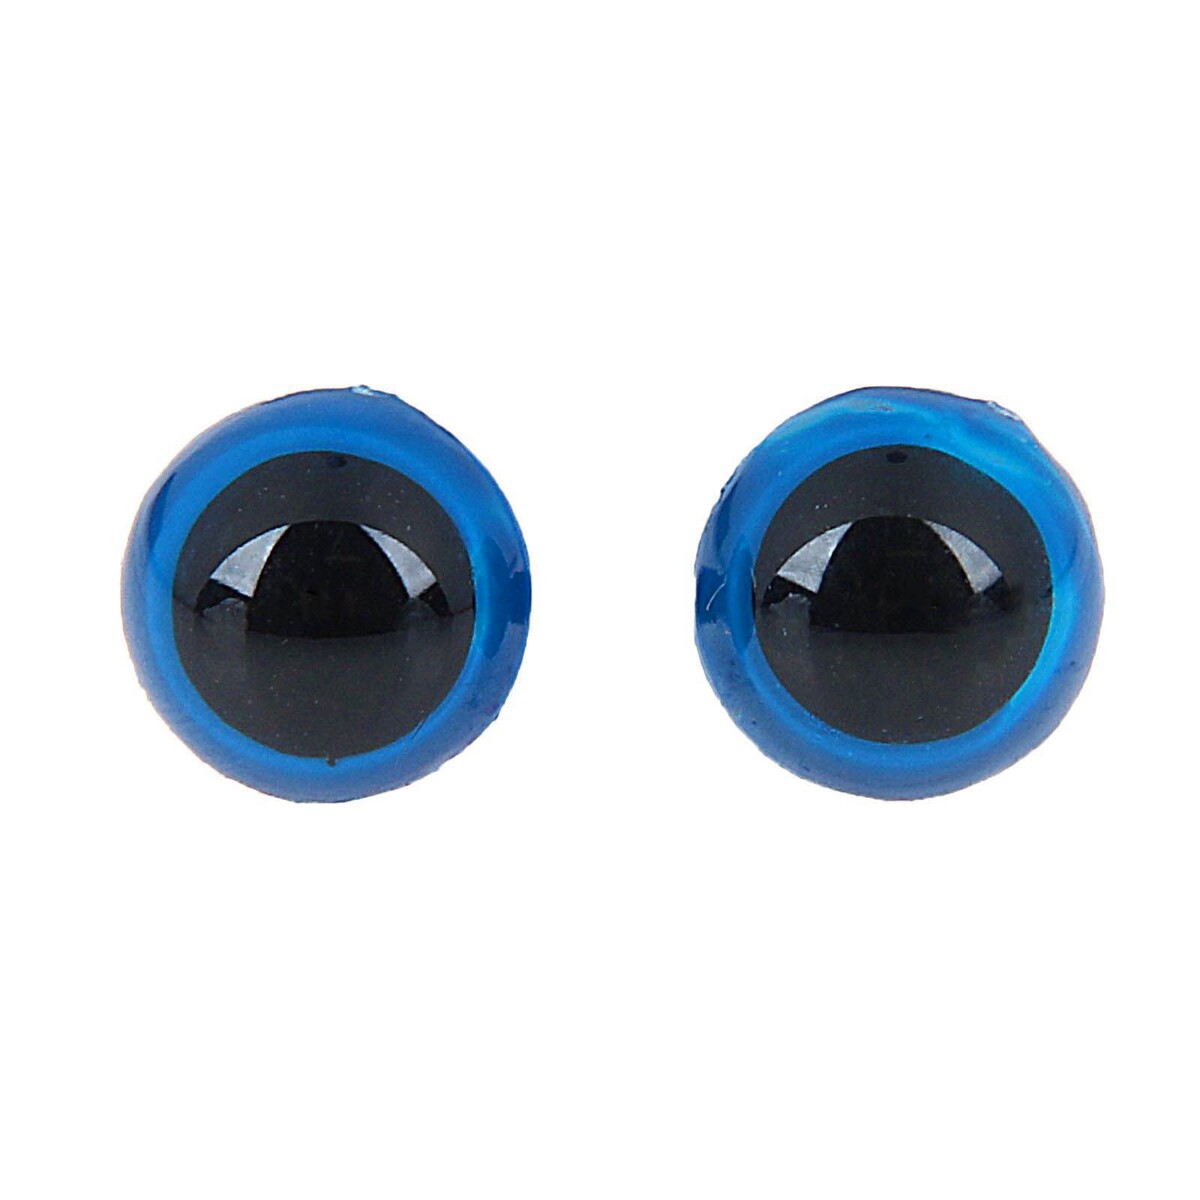 Глаза винтовые с заглушками, полупрозрачные, набор 4 шт, цвет голубой, размер 1 шт: 1,3×1,3 см глаза винтовые с заглушками полупрозрачные набор 4 шт голубой размер 1 шт 1×1 см